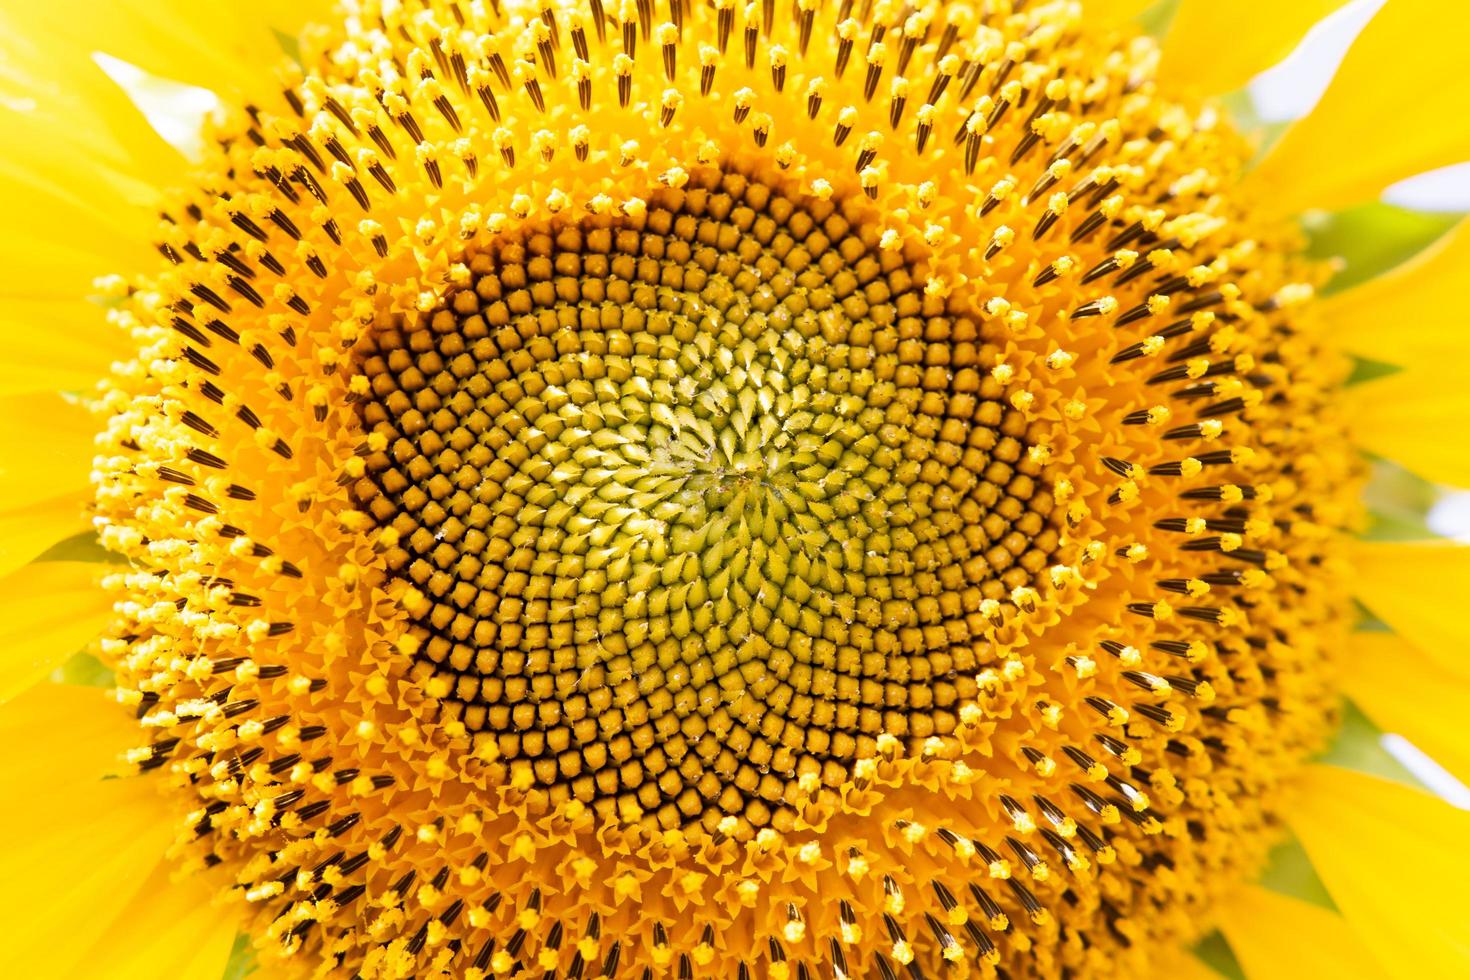 vista de perto do girassol, mostrando detalhes no centro da flor foto